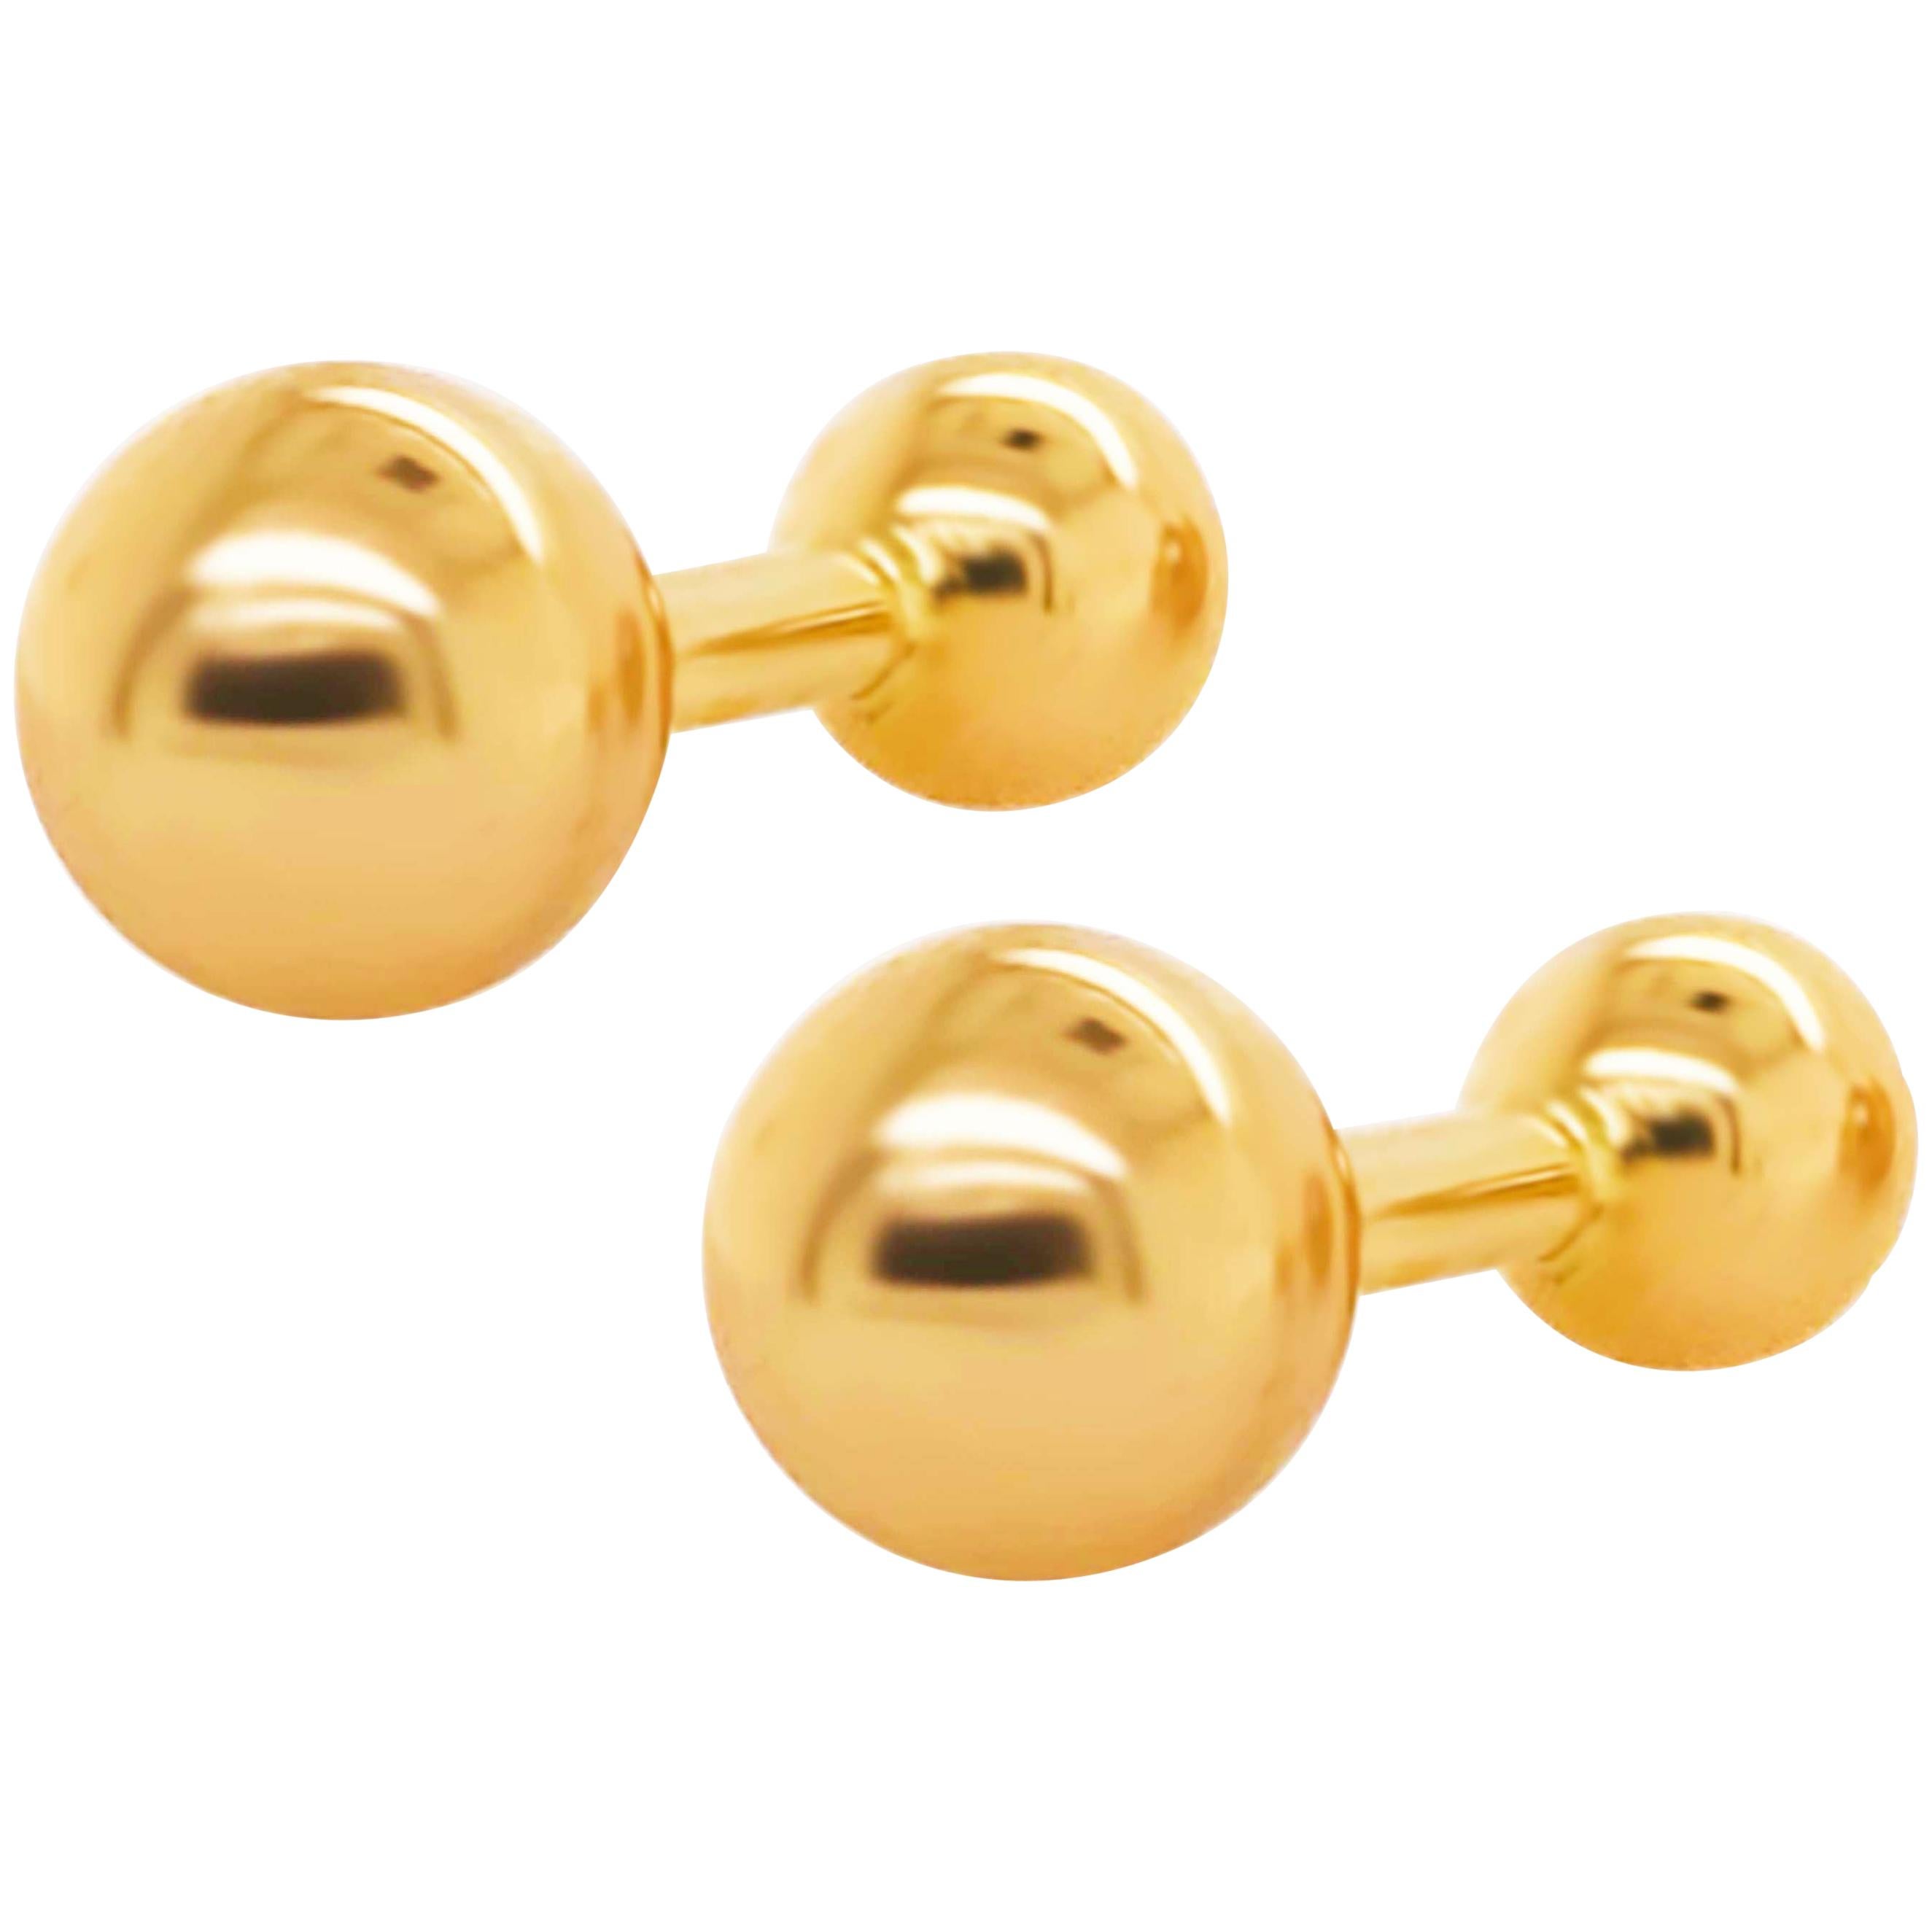 Gold Ball Cufflinks, Men's Cufflinks 14 Karat Yellow Gold Ball High Polish